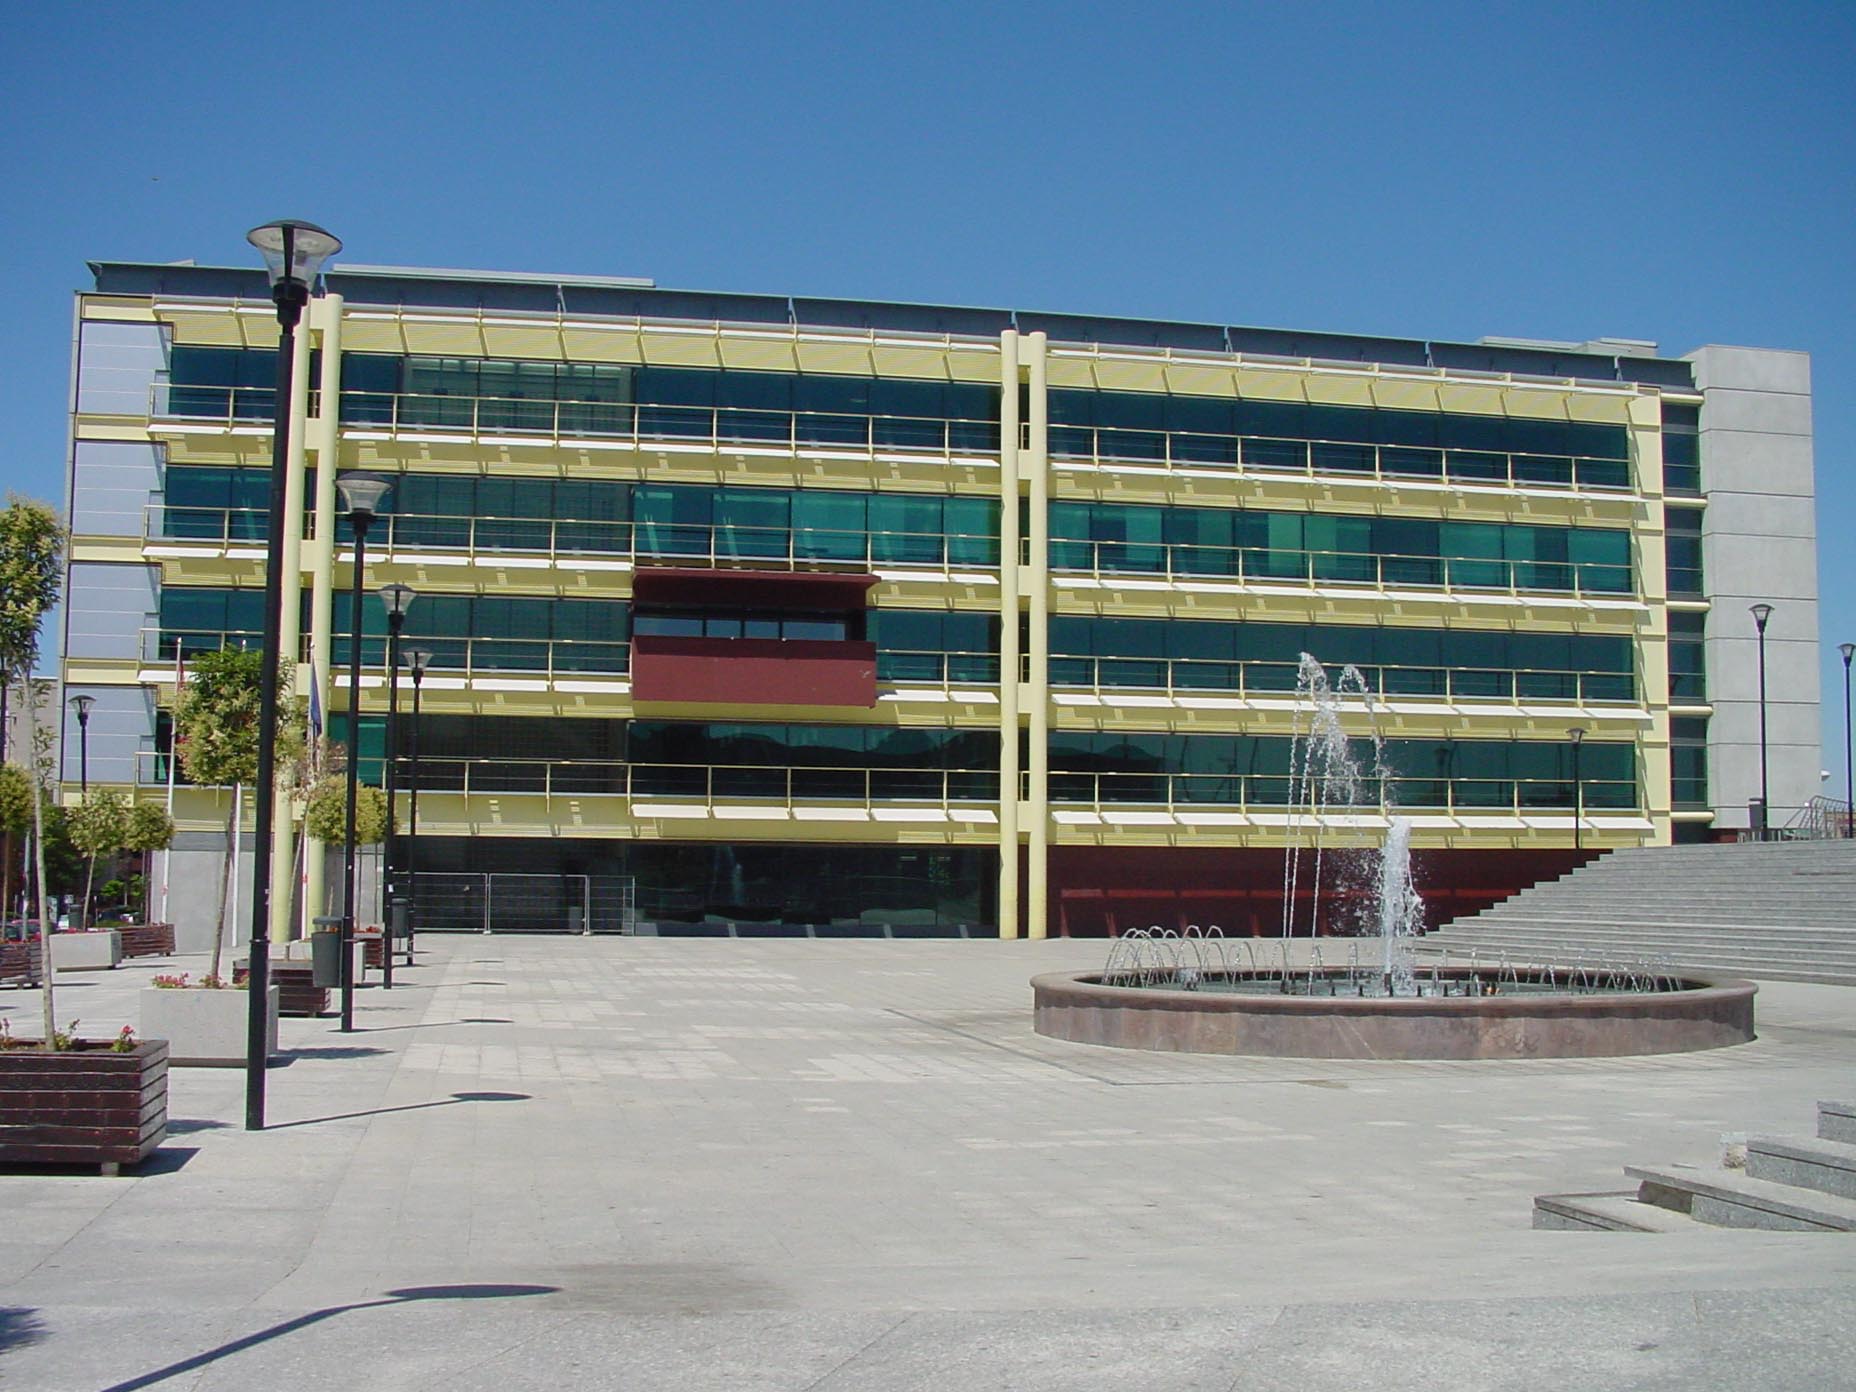 Plaza de la Constitución y fachada del ayuntamiento